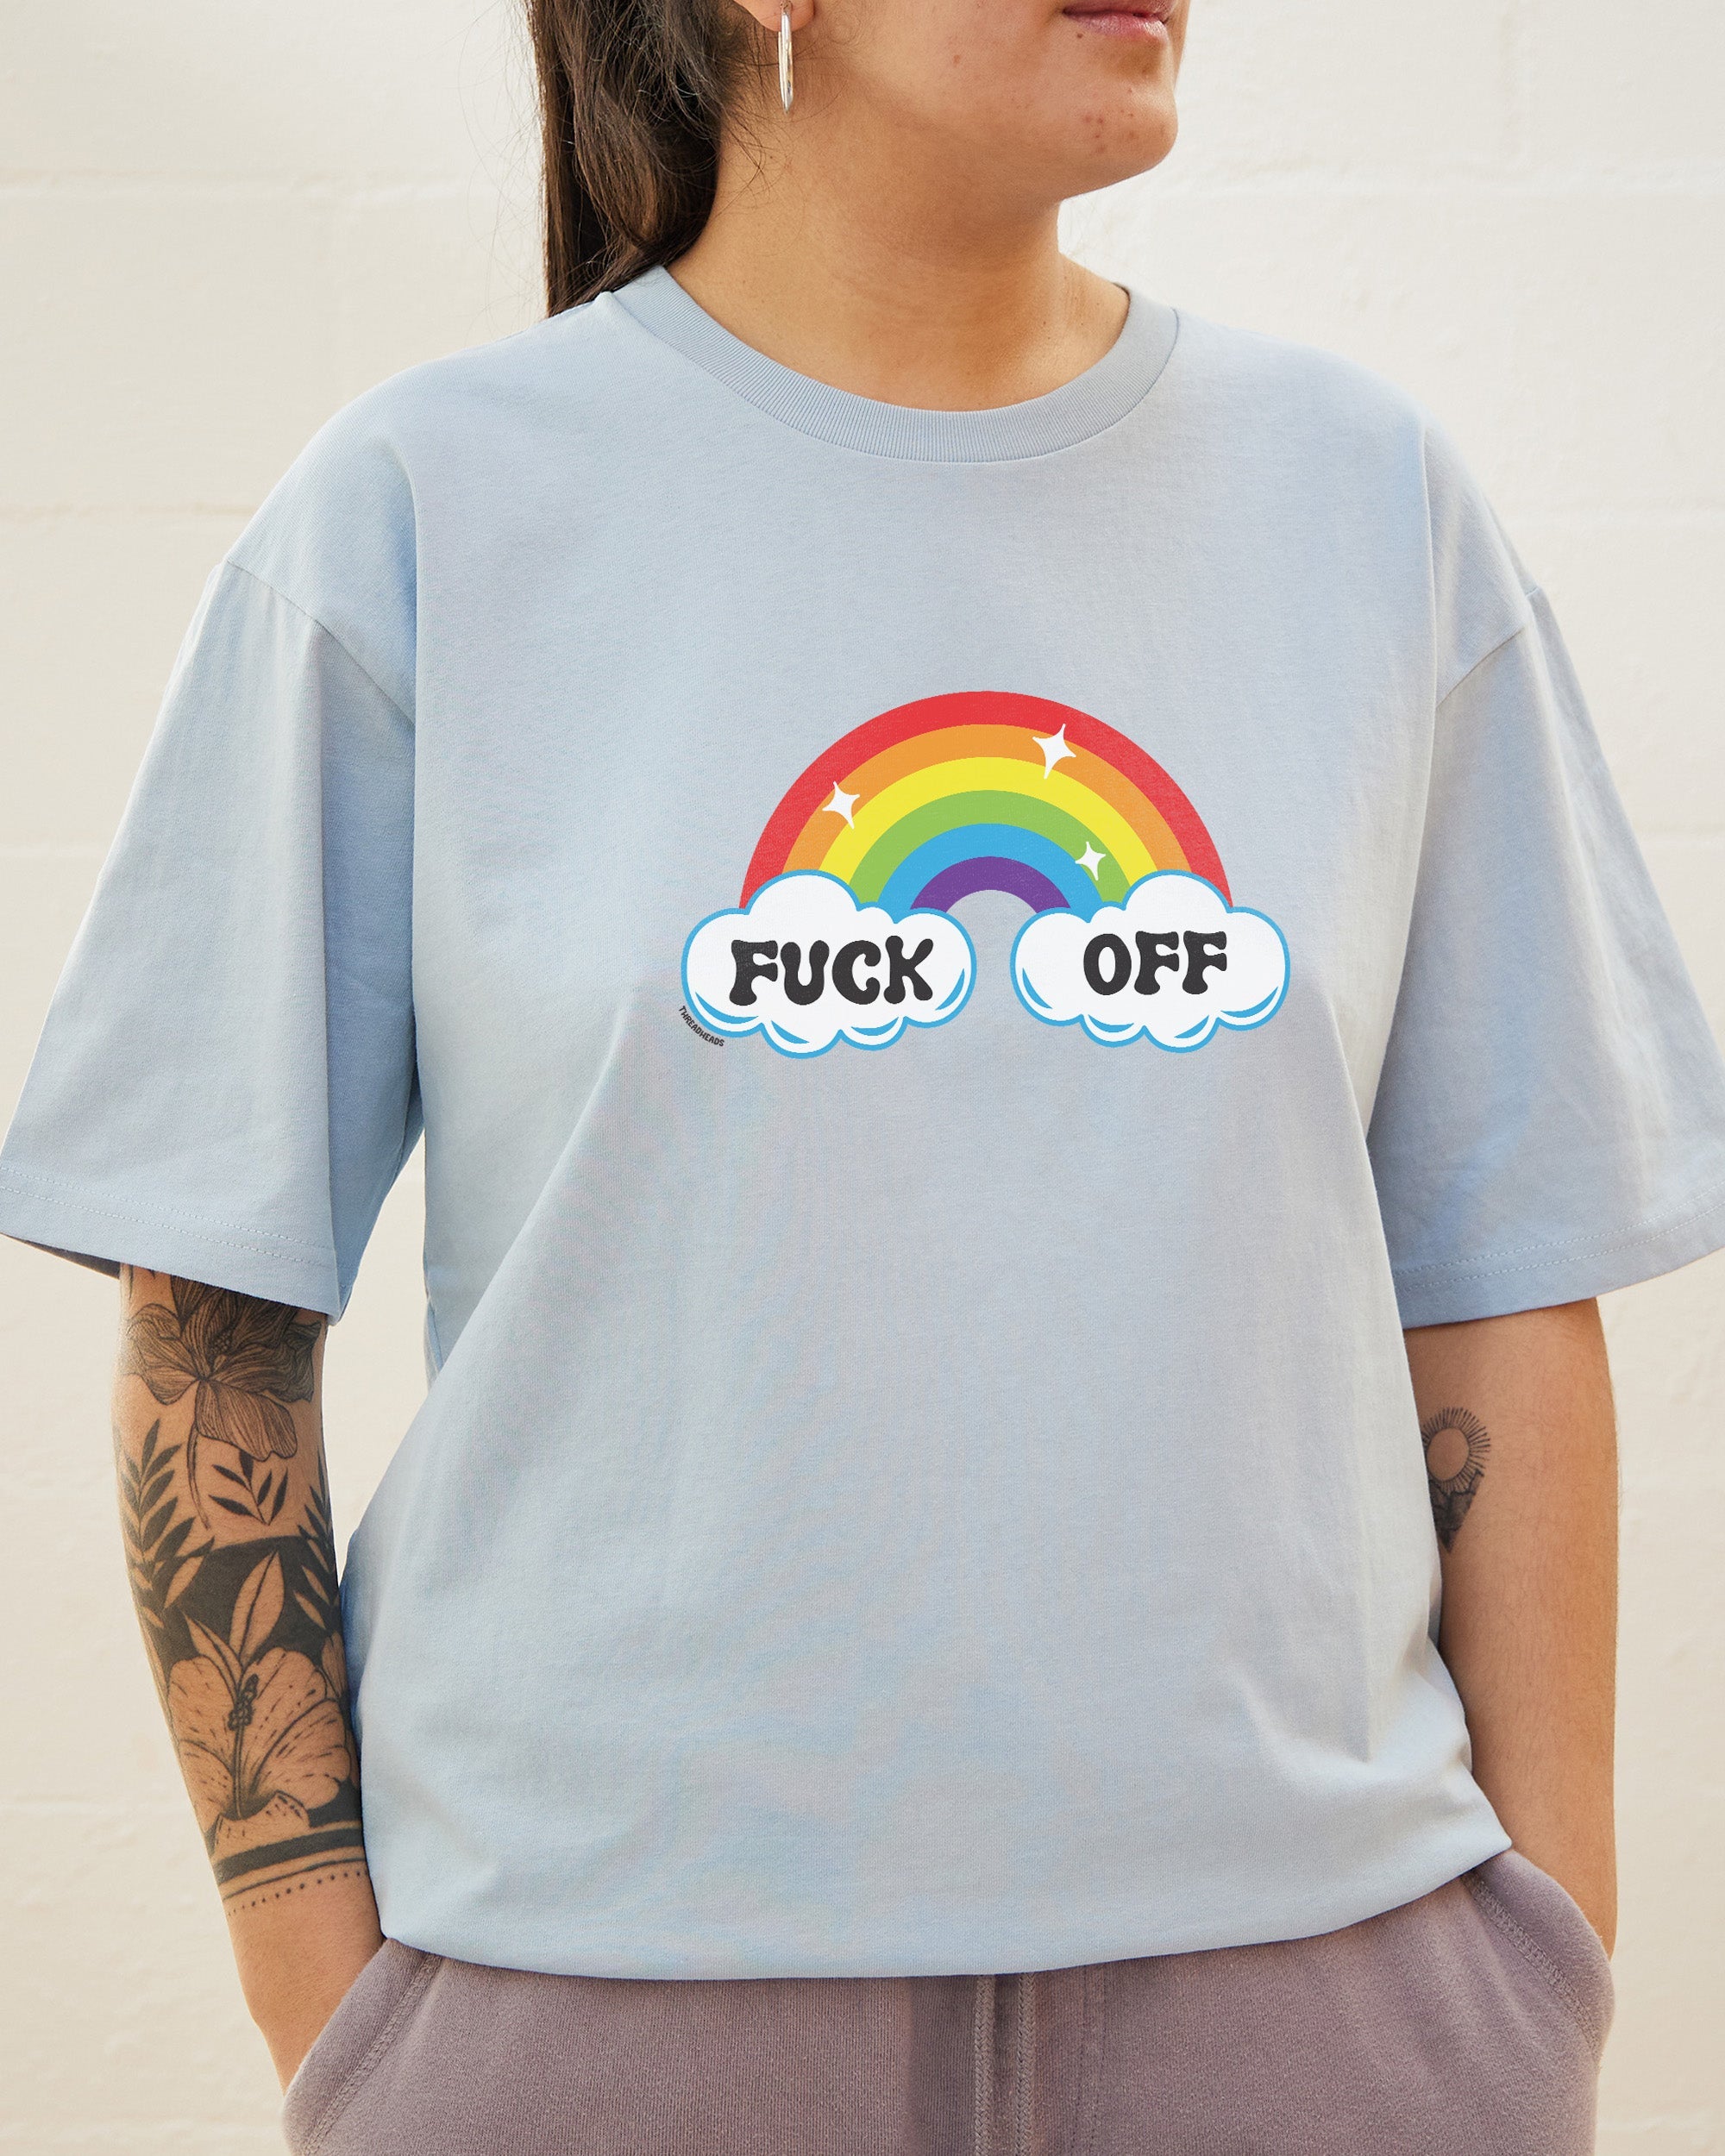 Fk Off Rainbow T-Shirt Australia Online Pale Blue